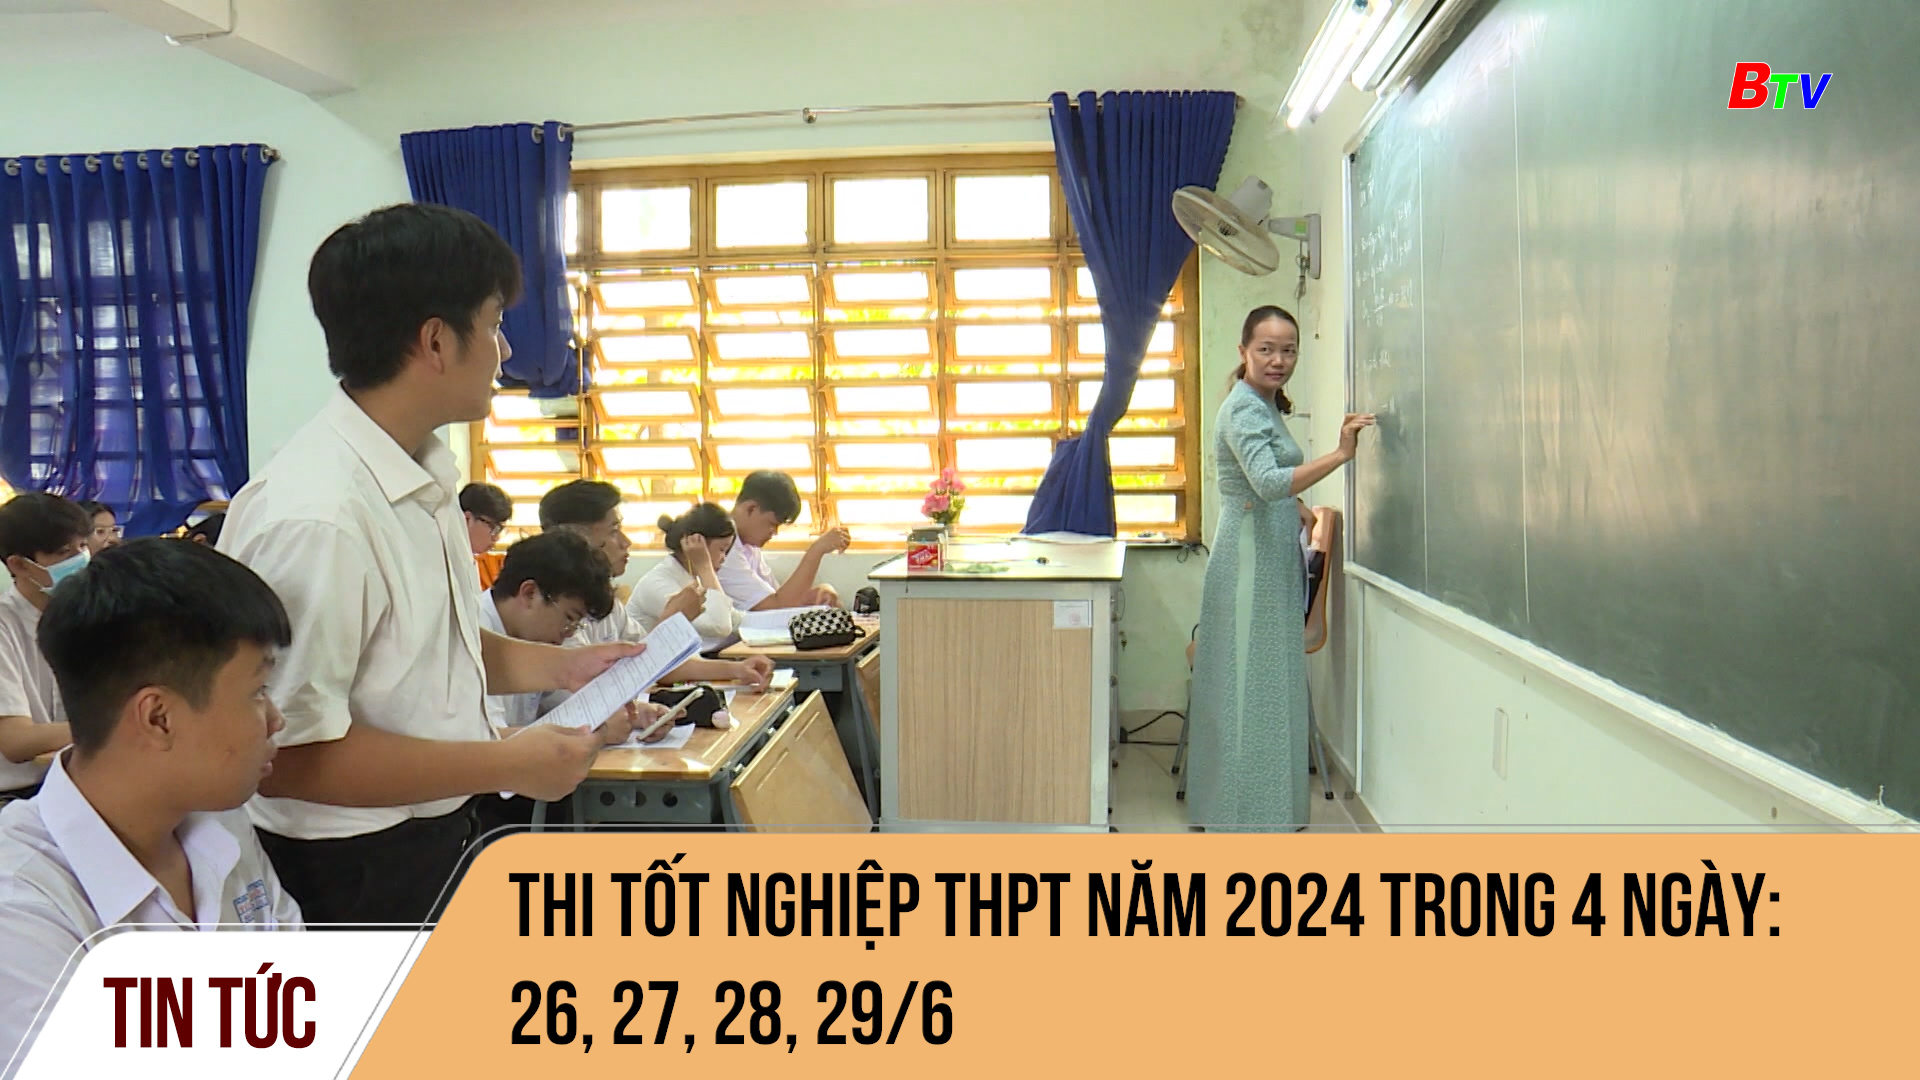 Thi tốt nghiệp THPT năm 2024 trong 4 ngày: 26, 27, 28, 29/6